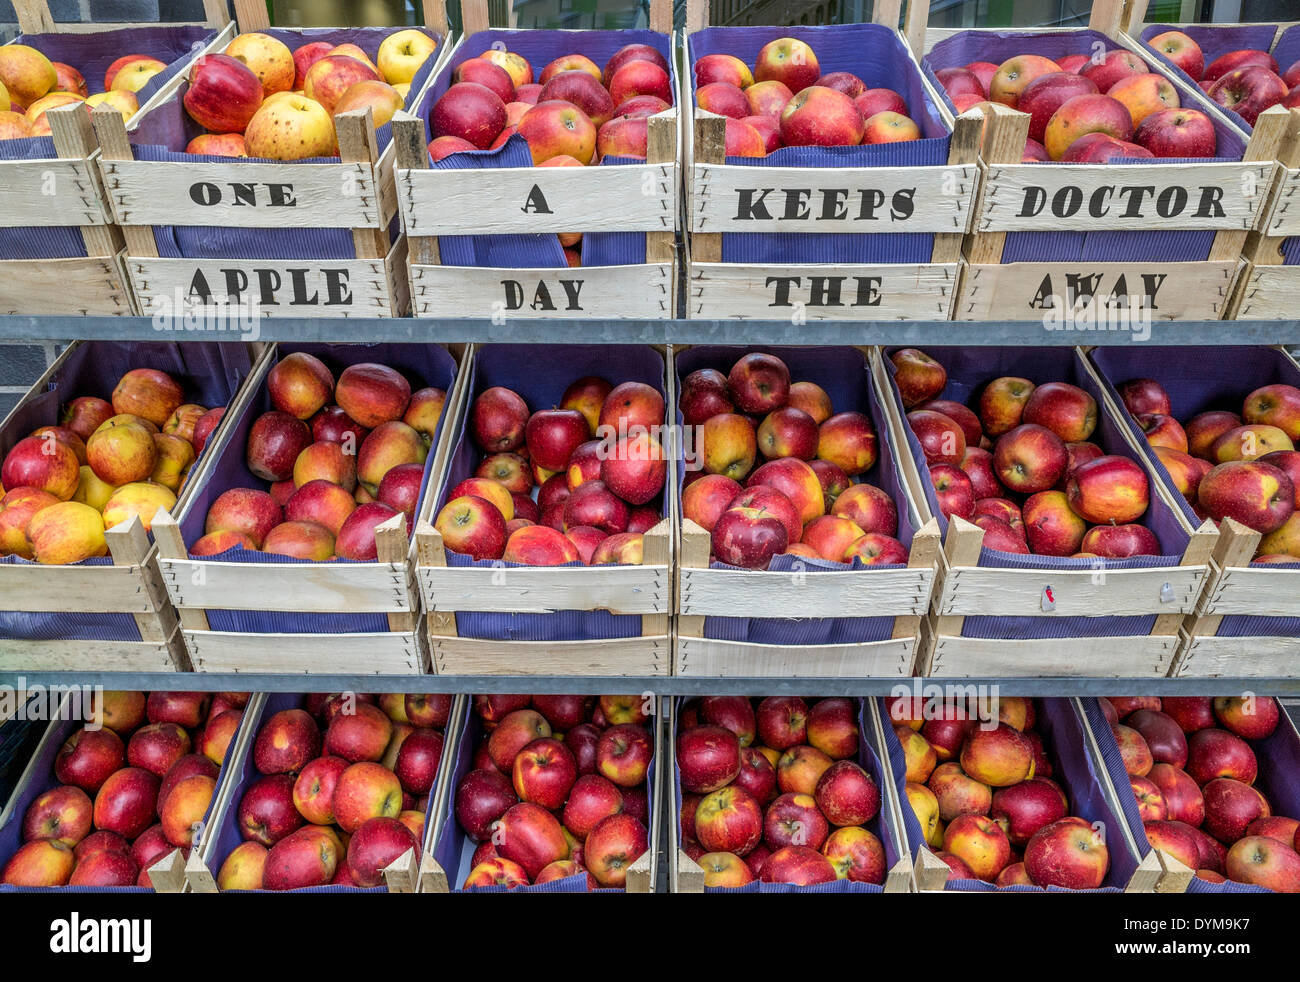 Äpfel in Obstkisten mit den schreiben "ein Apple a Day the Doctor away keeps", Markt, Stall, Erfurt, Thüringen, Deutschland Stockfoto